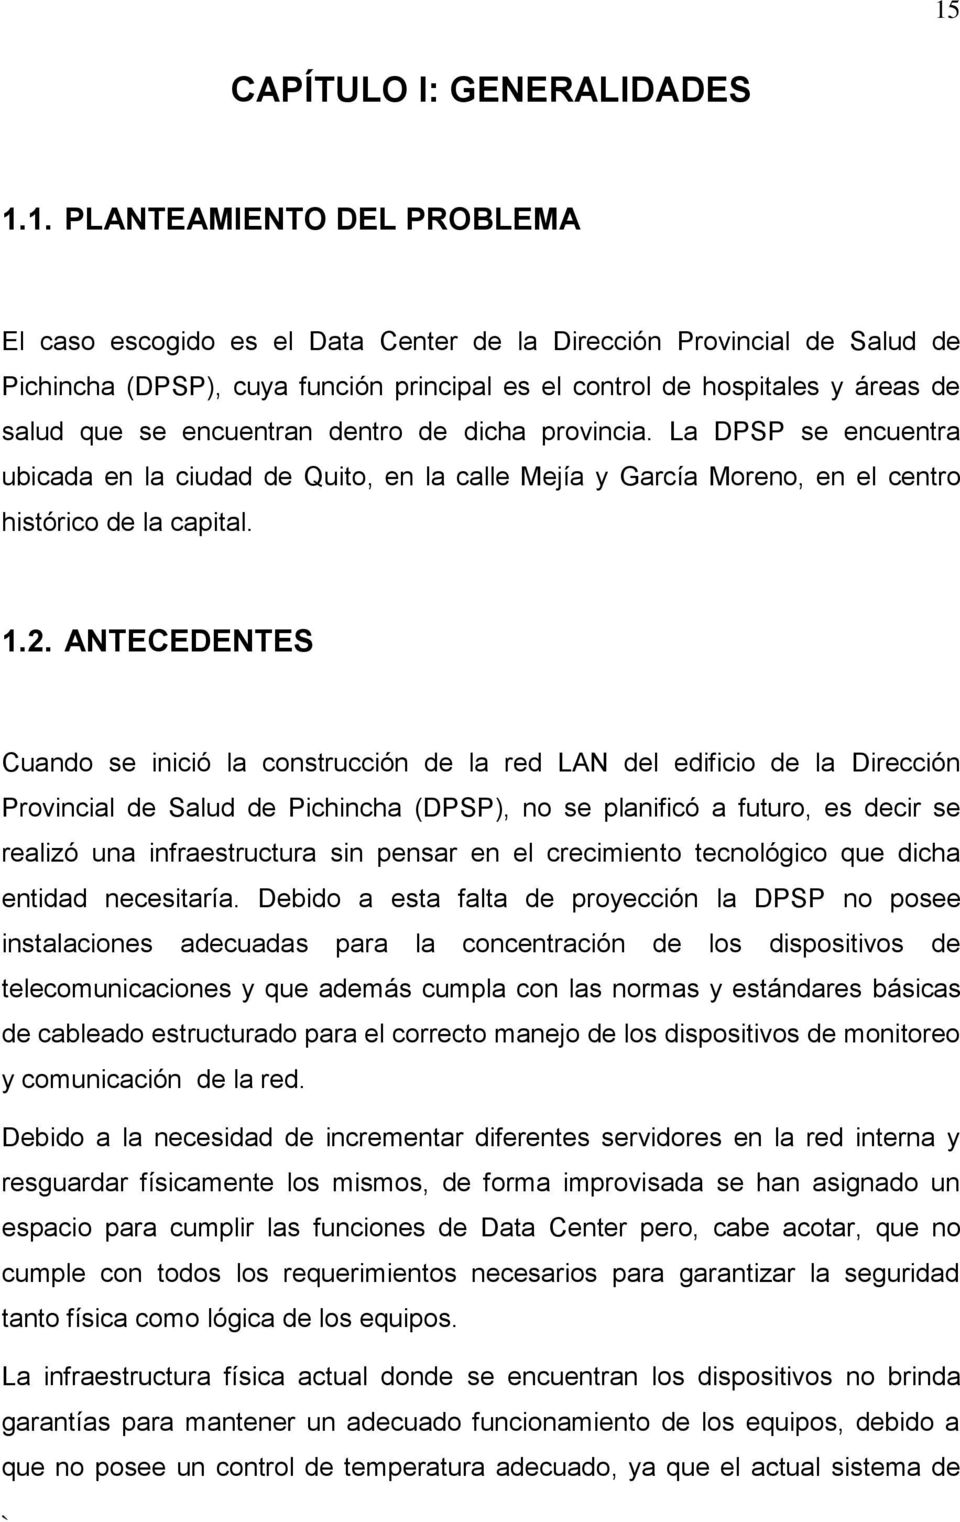 2. ANTECEDENTES Cuando se inició la construcción de la red LAN del edificio de la Dirección Provincial de Salud de Pichincha (DPSP), no se planificó a futuro, es decir se realizó una infraestructura